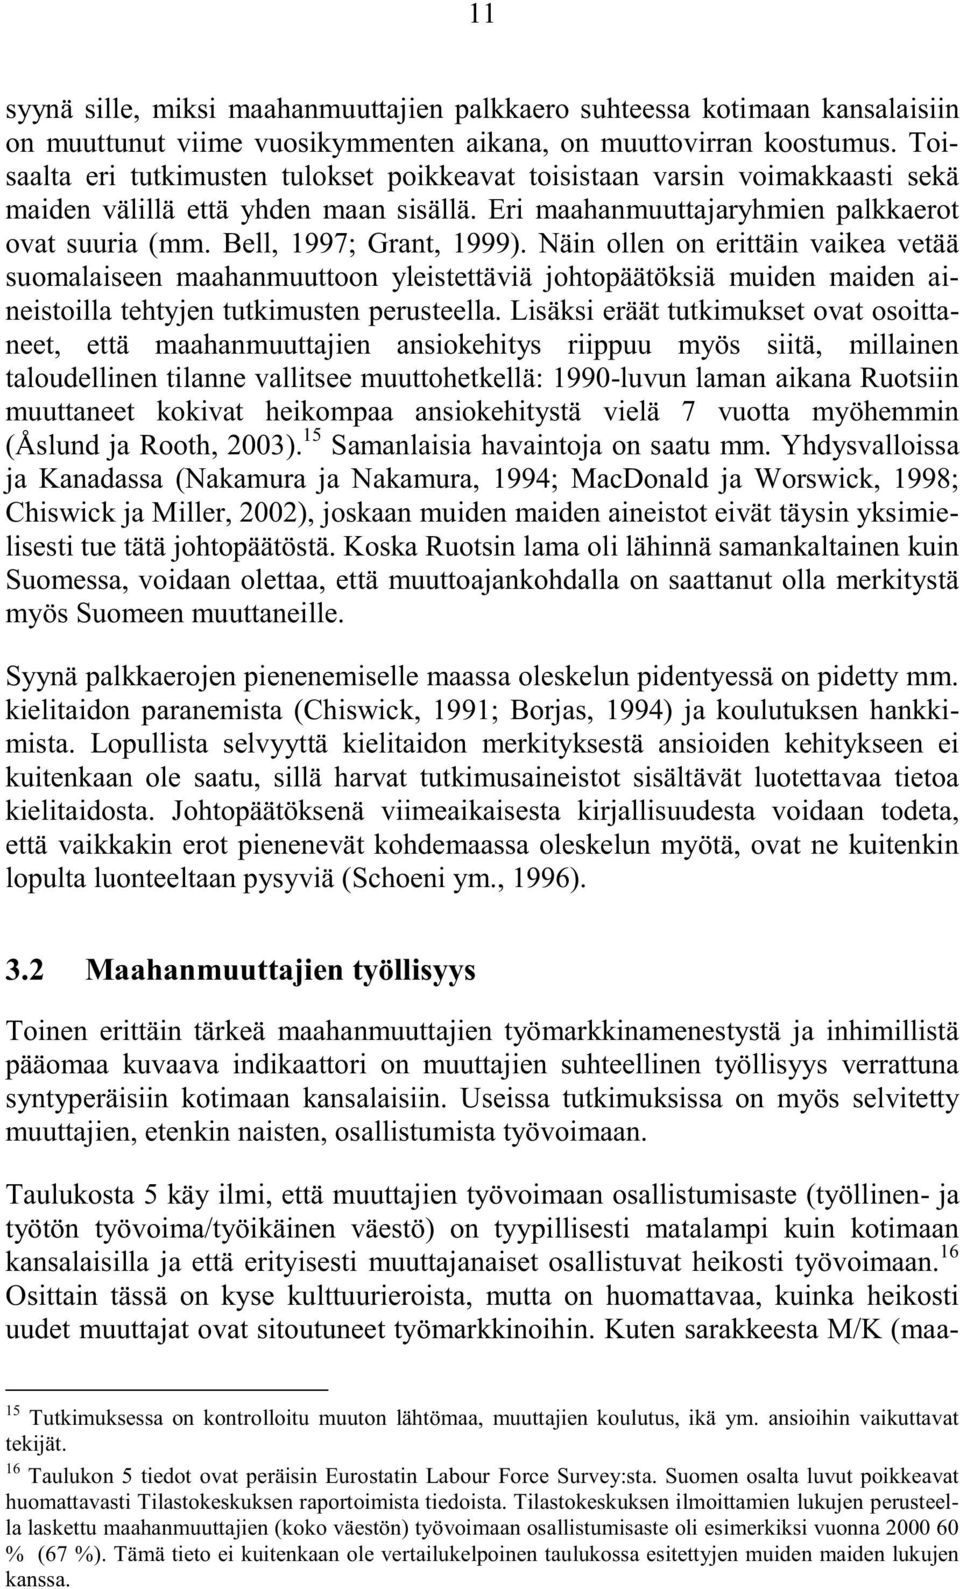 Bell, 1997; Grant, 1999). Näin ollen on erittäin vaikea vetää suomalaiseen maahanmuuttoon yleistettäviä johtopäätöksiä muiden maiden aineistoilla tehtyjen tutkimusten perusteella.